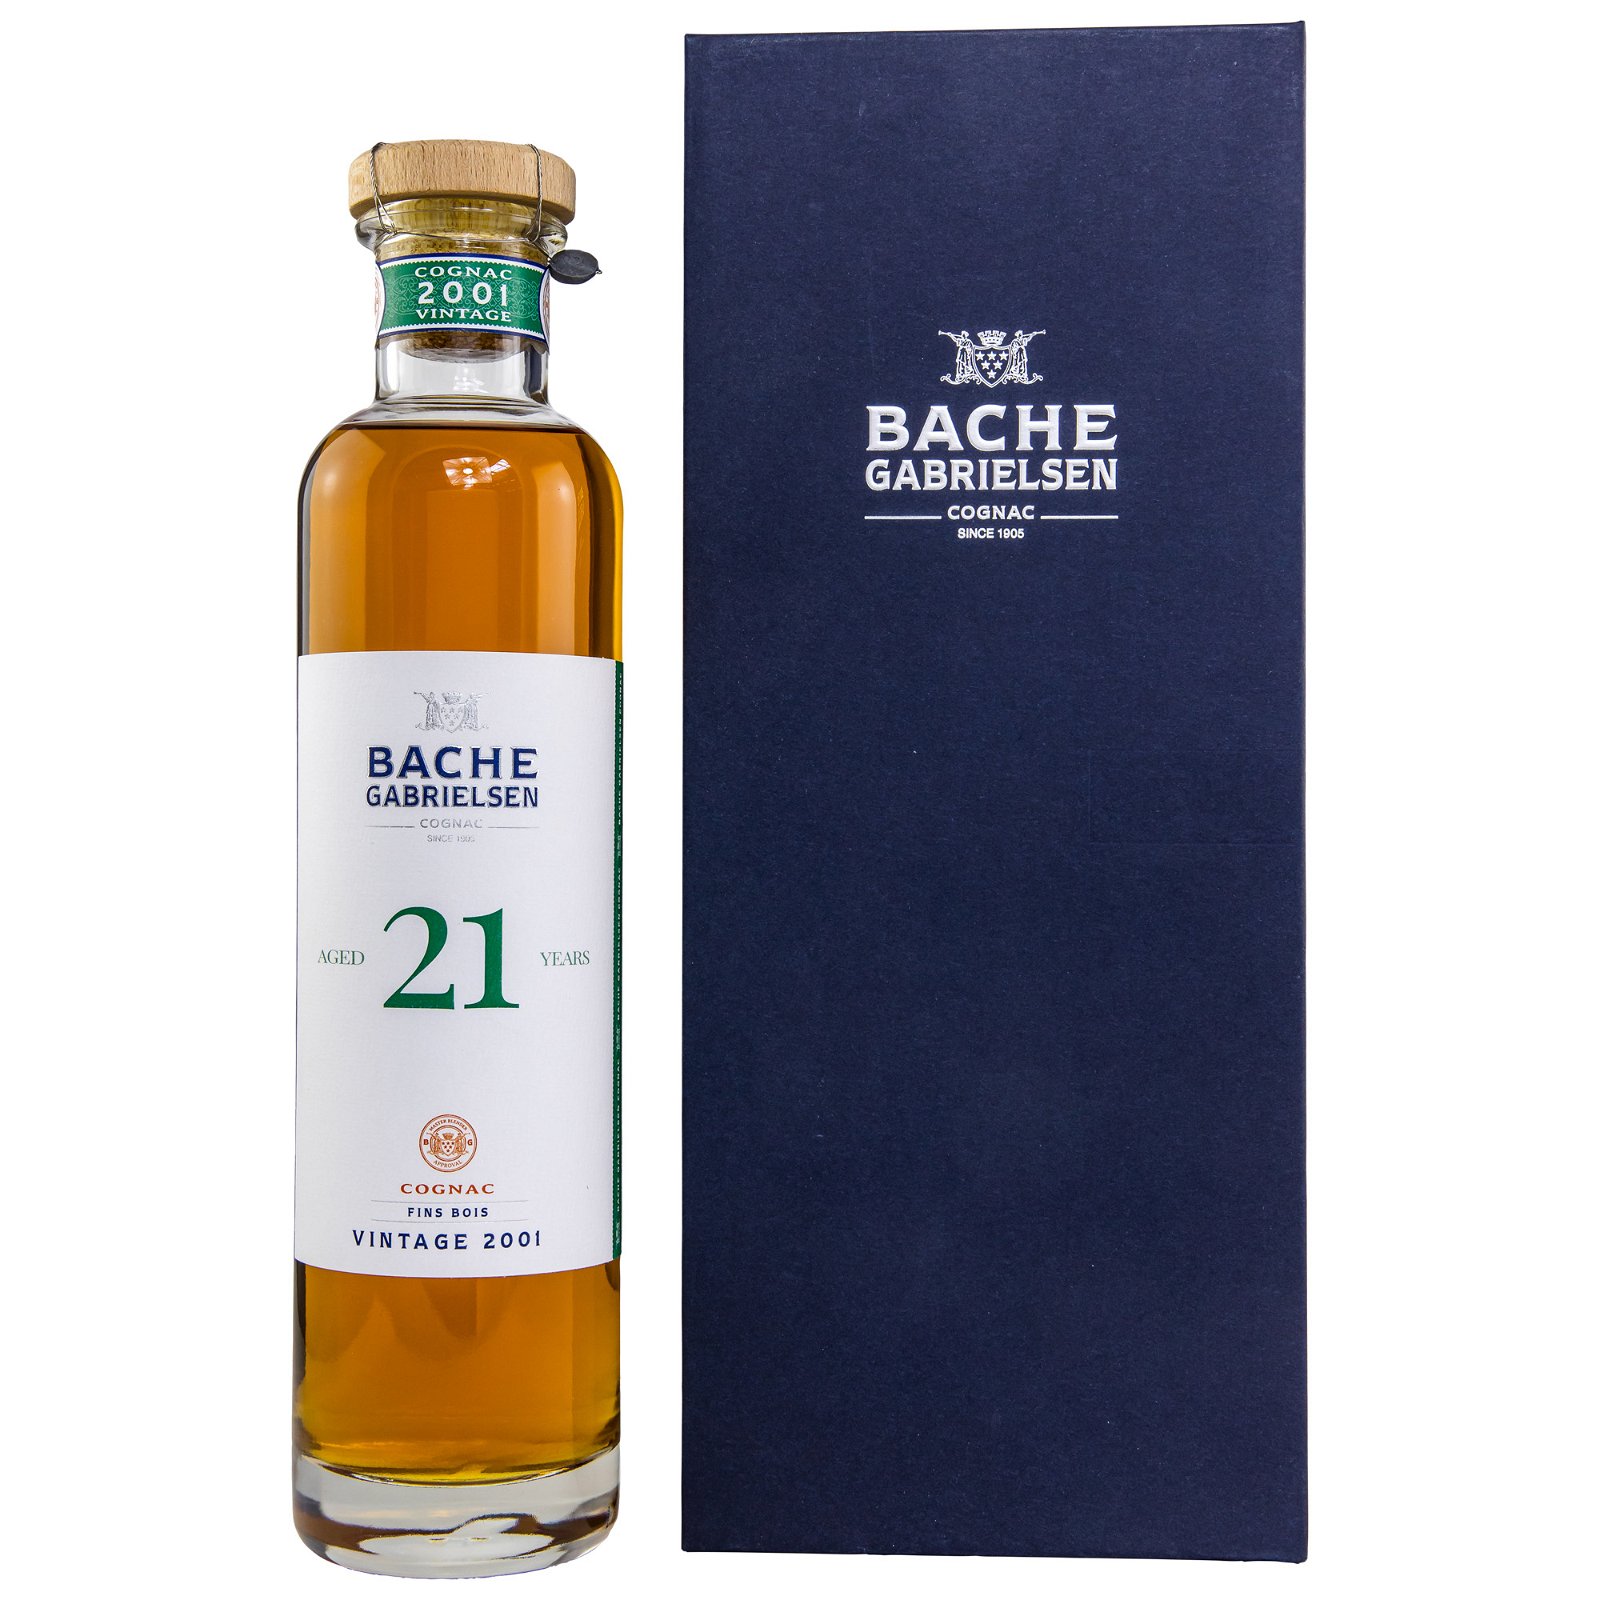 Bache-Gabrielsen Vintage 2001 - 21 Jahre Ugni Blanc Fins Bois Cask No. QIII-1